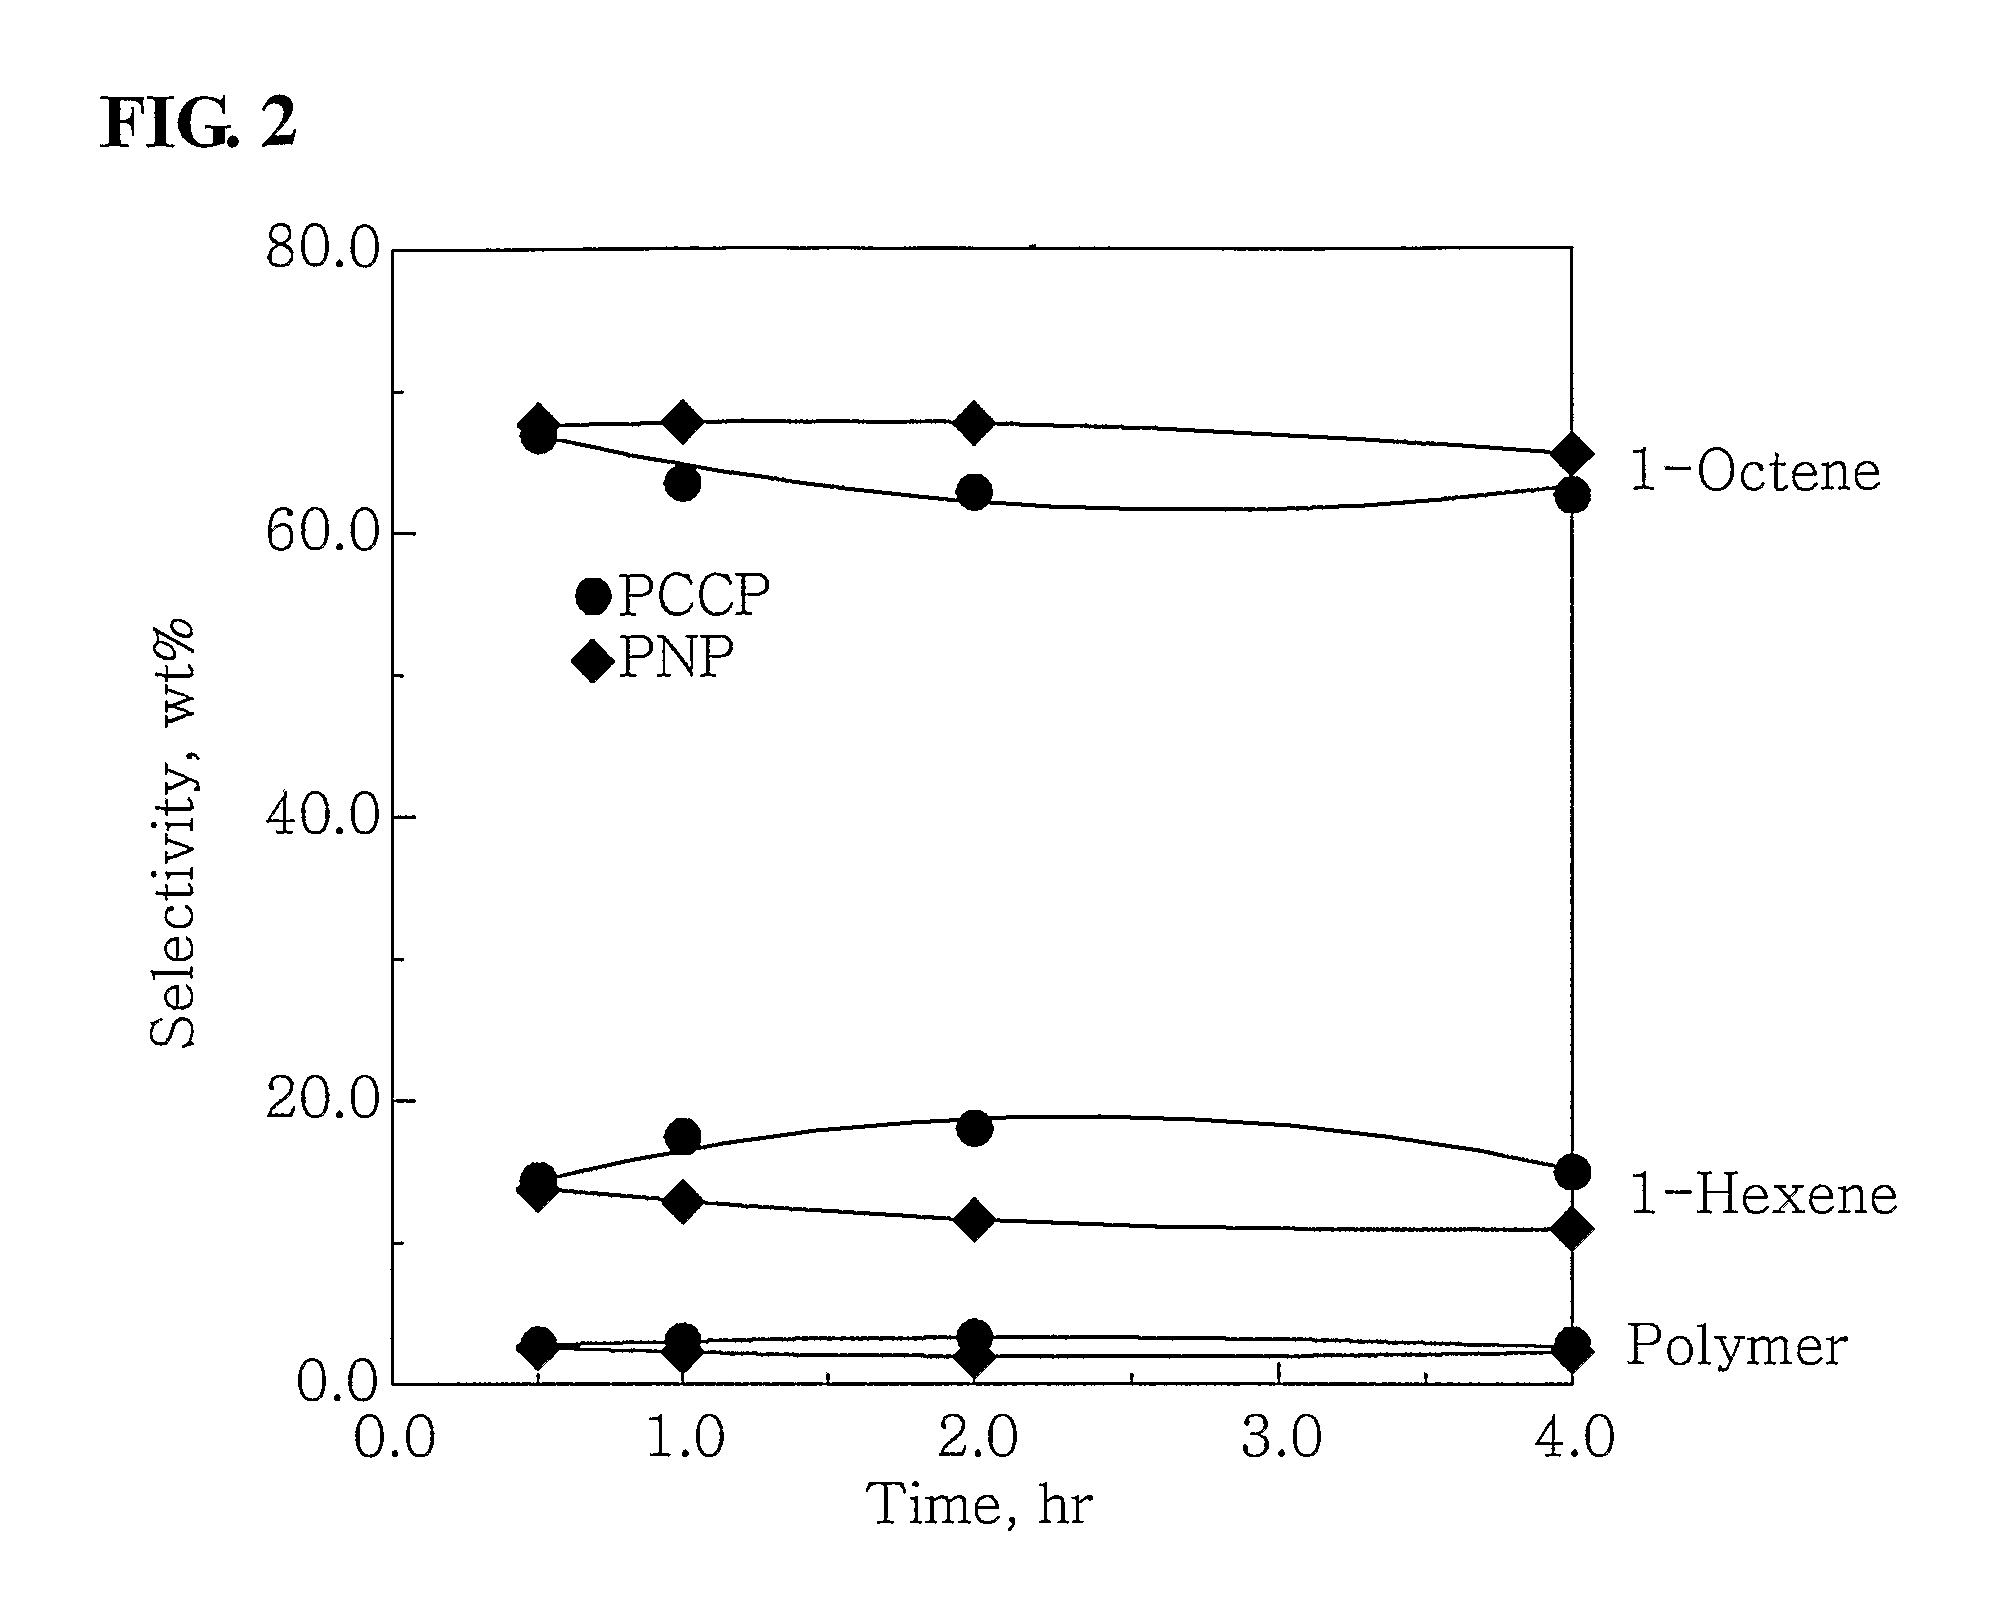 Ethylene tetramerization catalyst systems and method for preparing 1-octene using the same